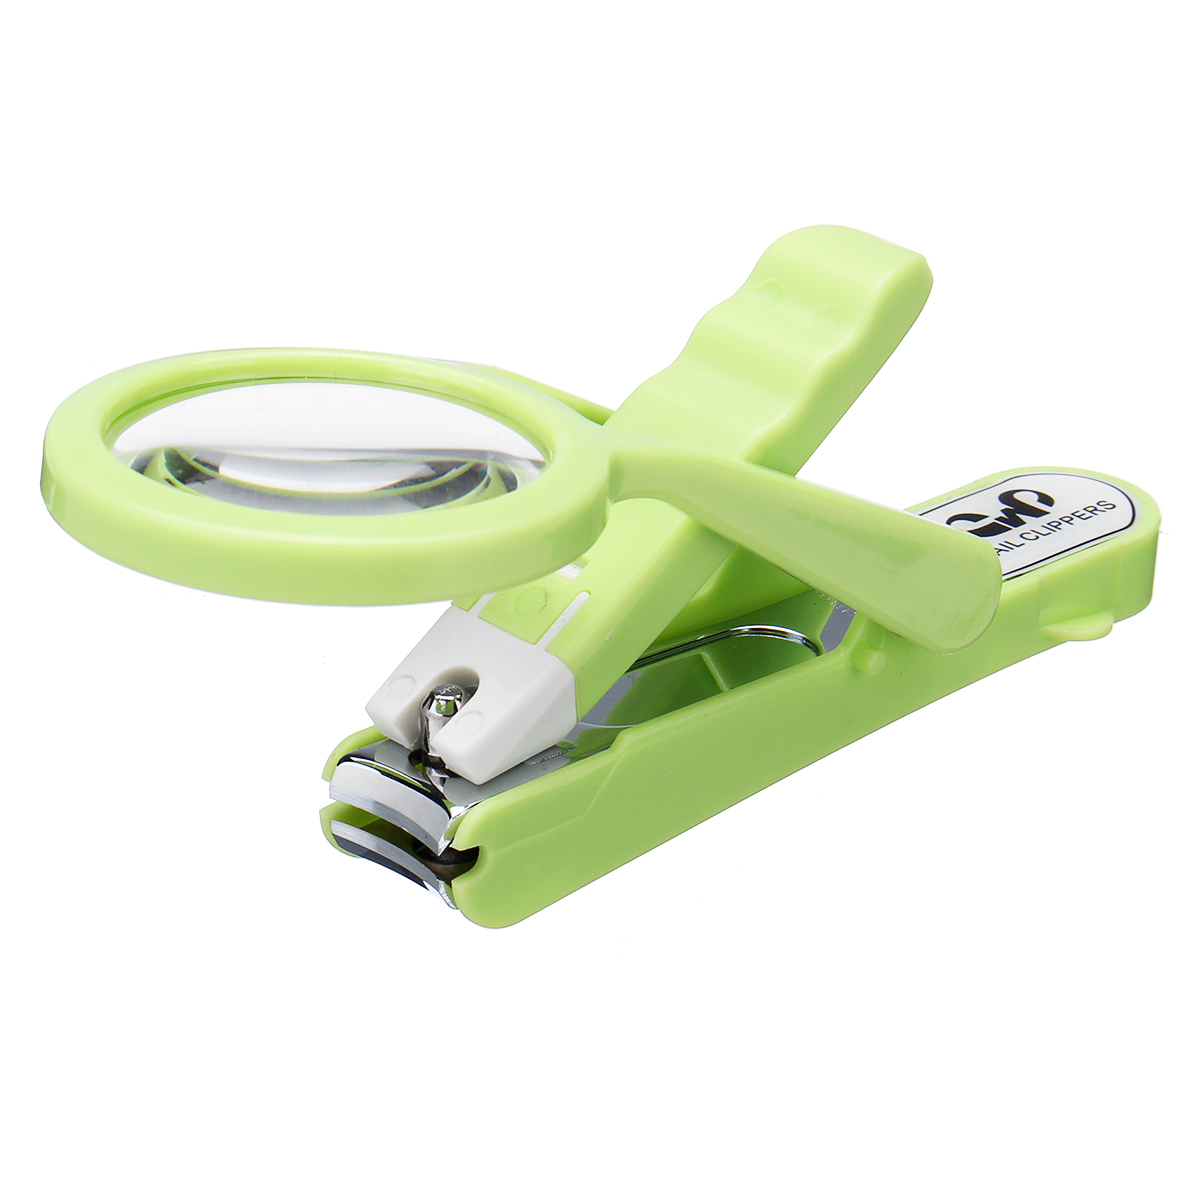 

LED Ногти Clipper Ножницы из нержавеющей стали Clipper Ногти Инструмент с подсветкой